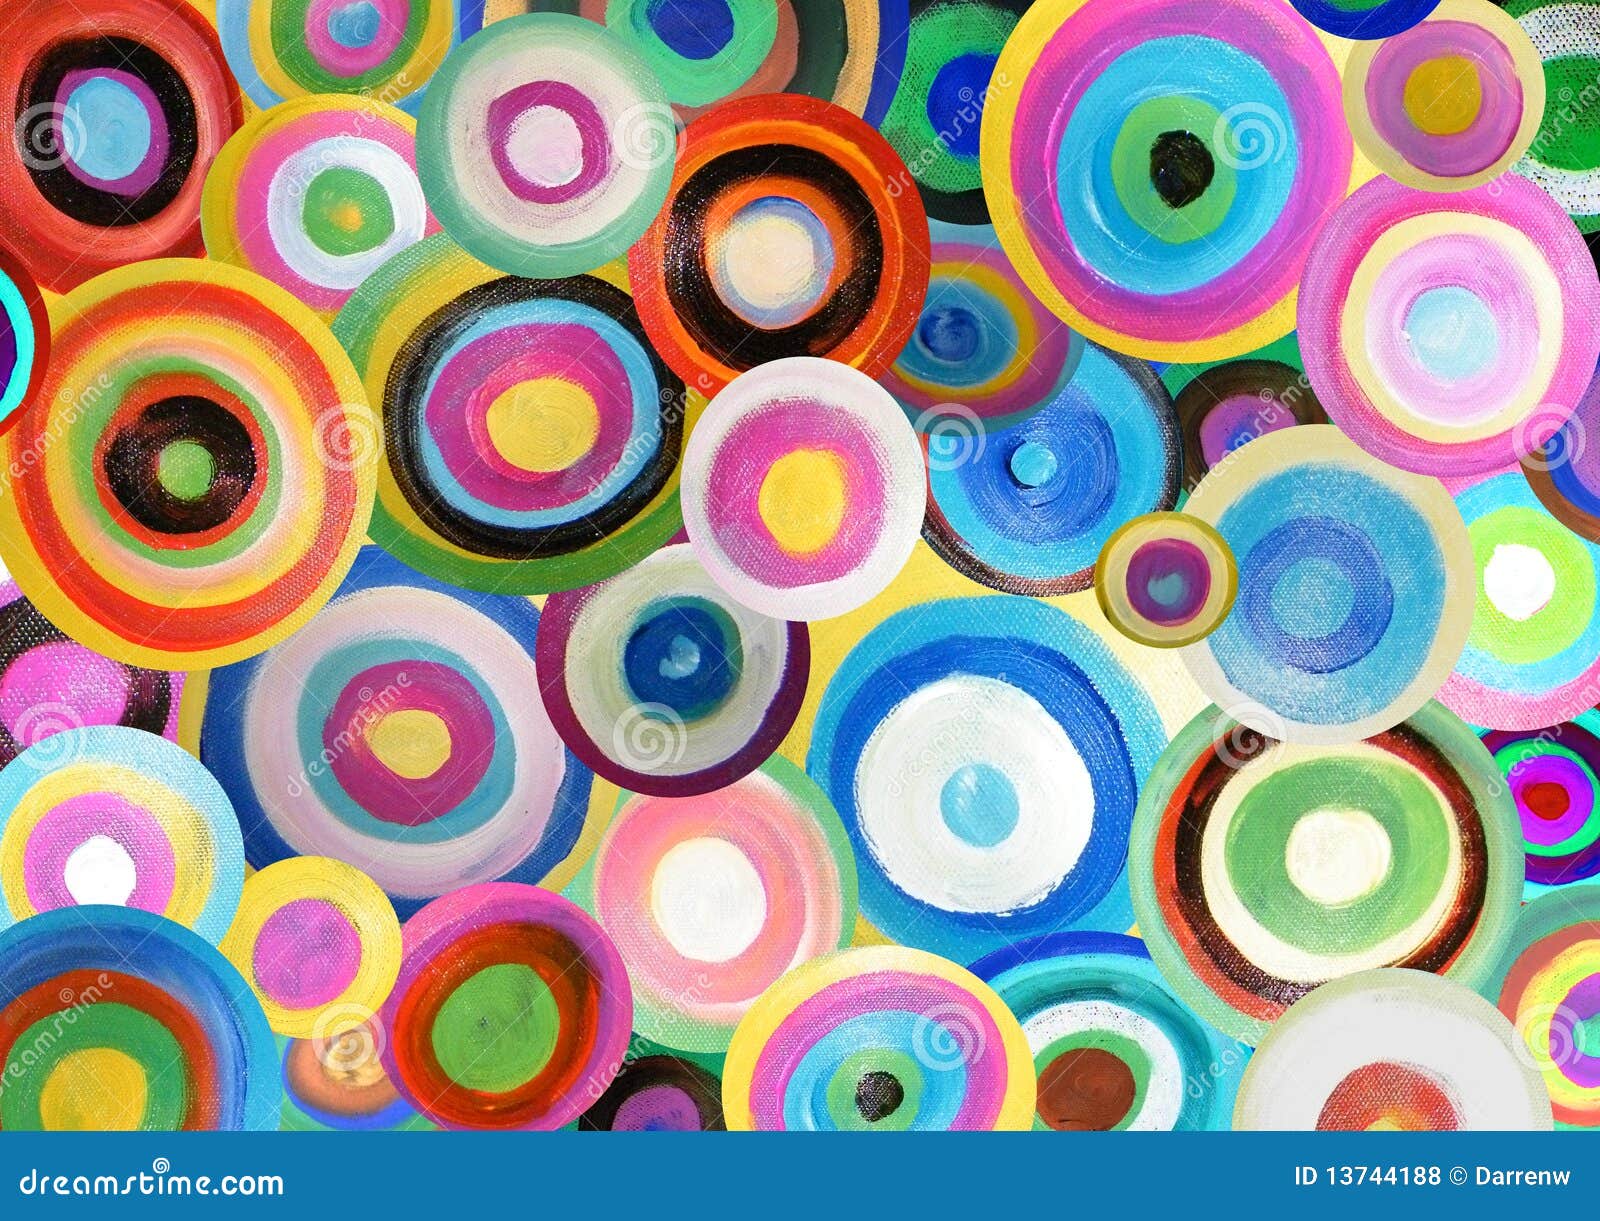 painted circles